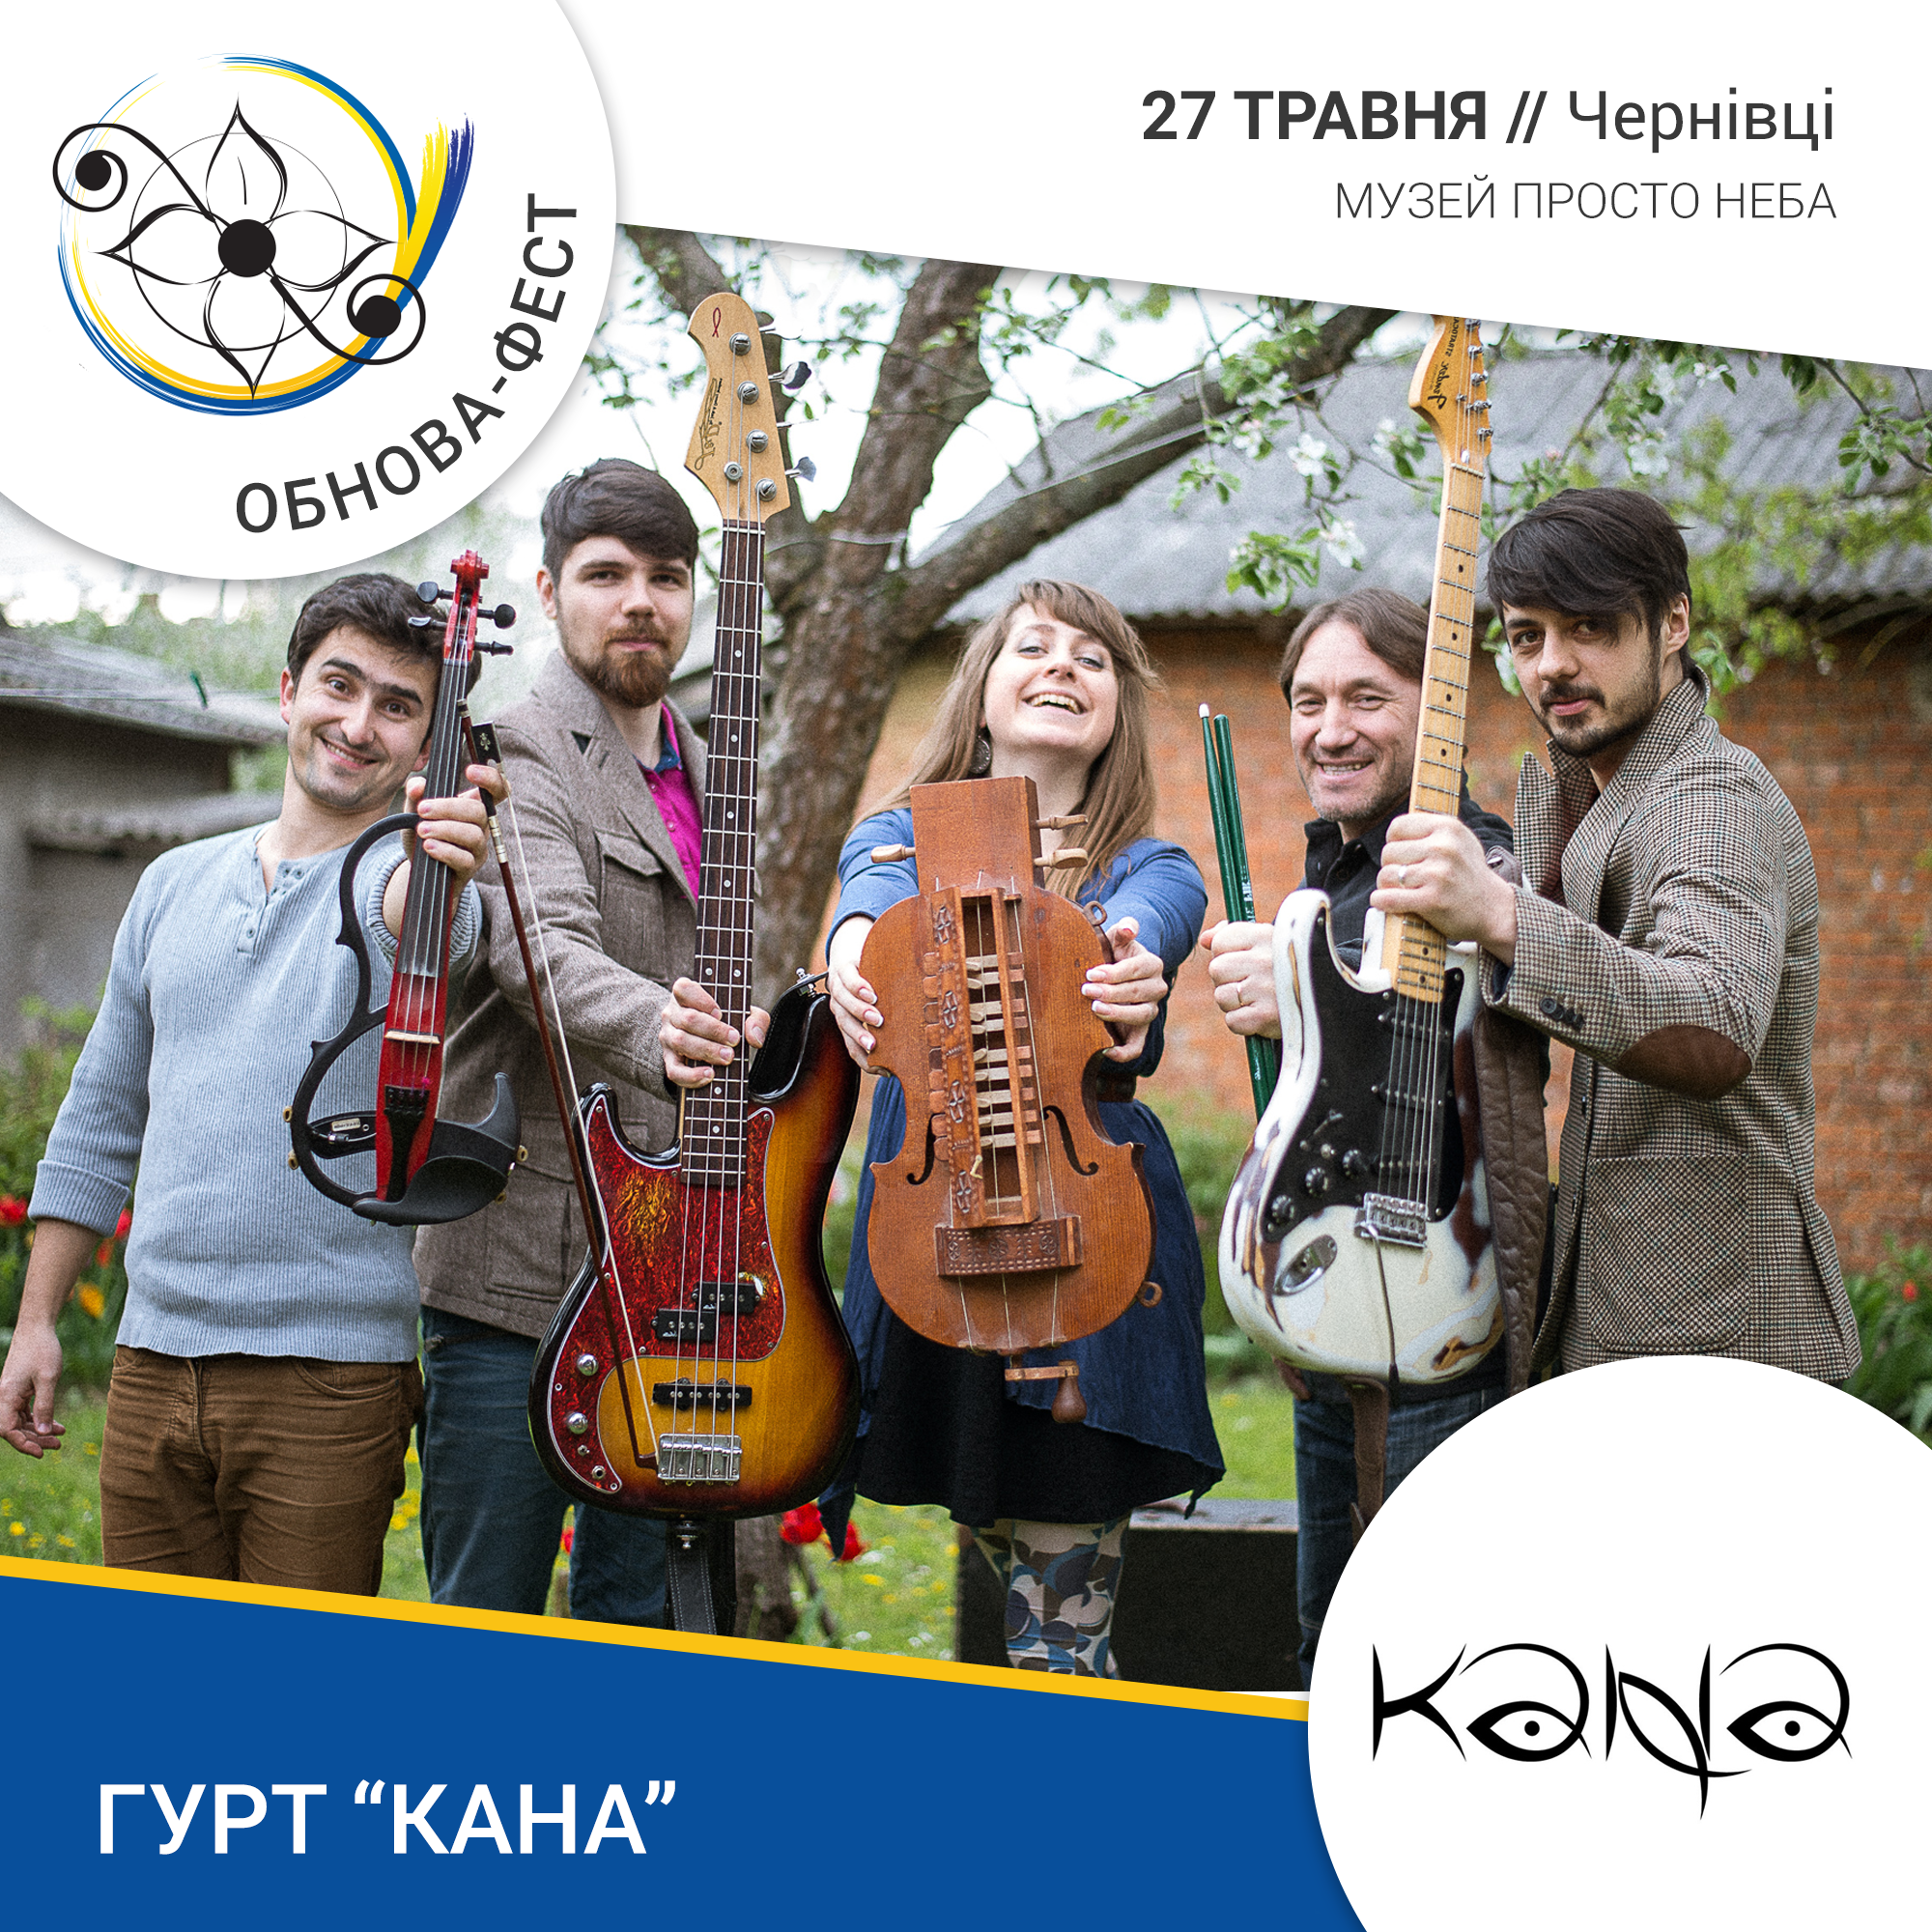 Зустрічайте довгоочікуваних гостей нашого фестивалю, Вперше на "Обнова-фесті" етно-поп-рок гурт Kana Band.